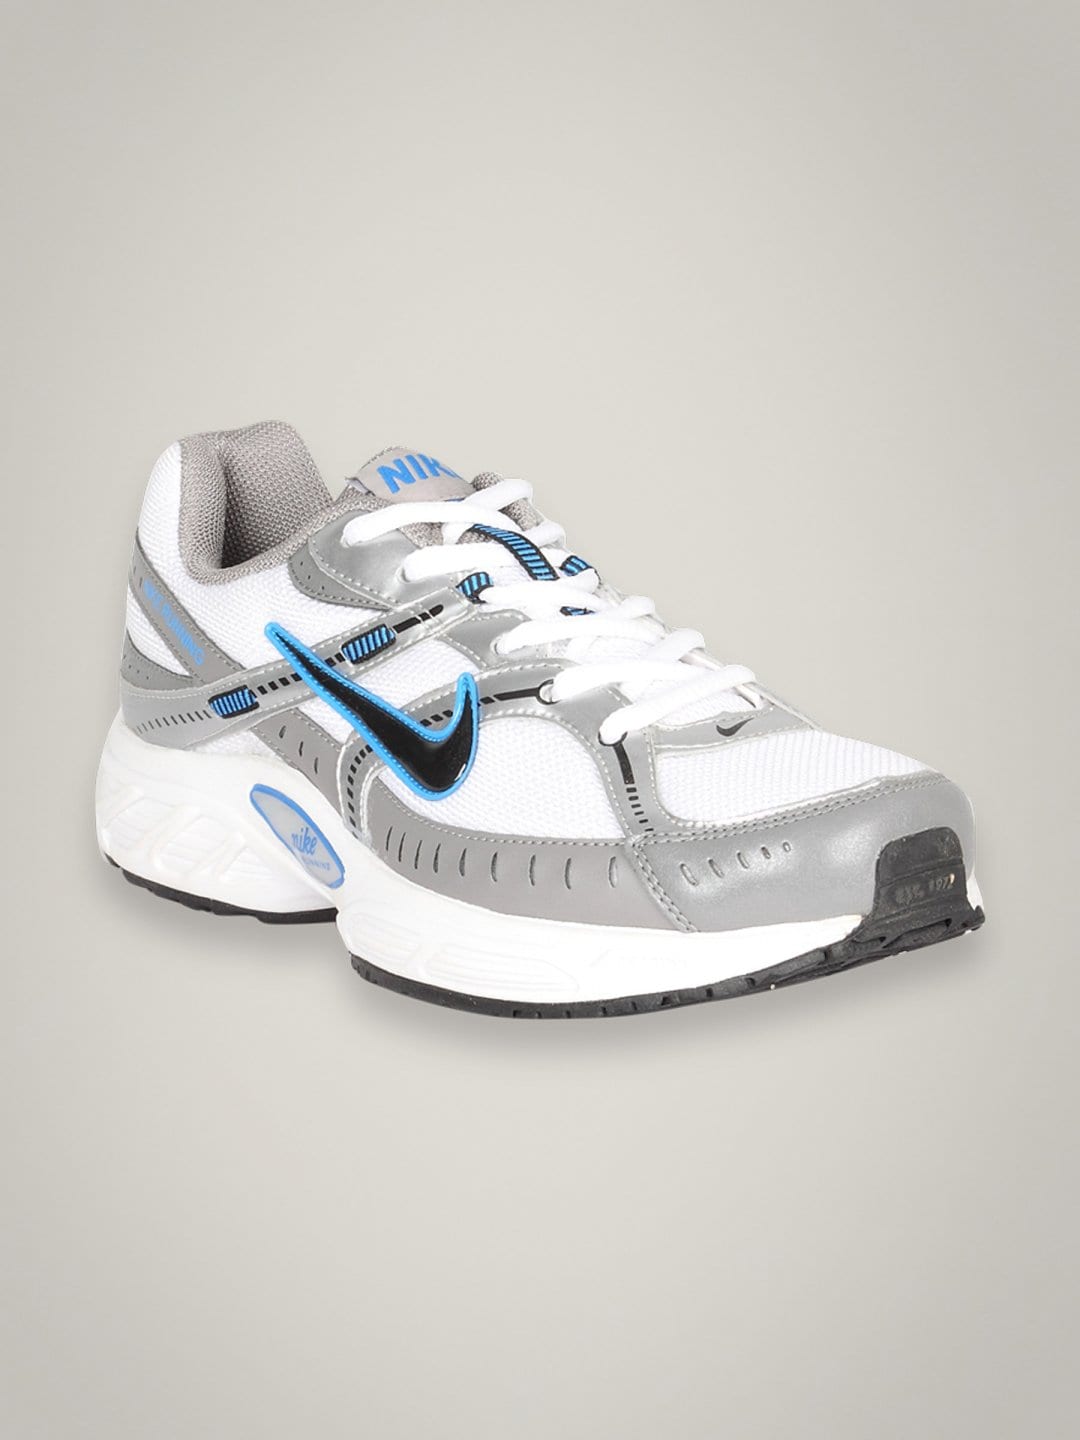 Nike Men's Ballista II White Grey Shoe